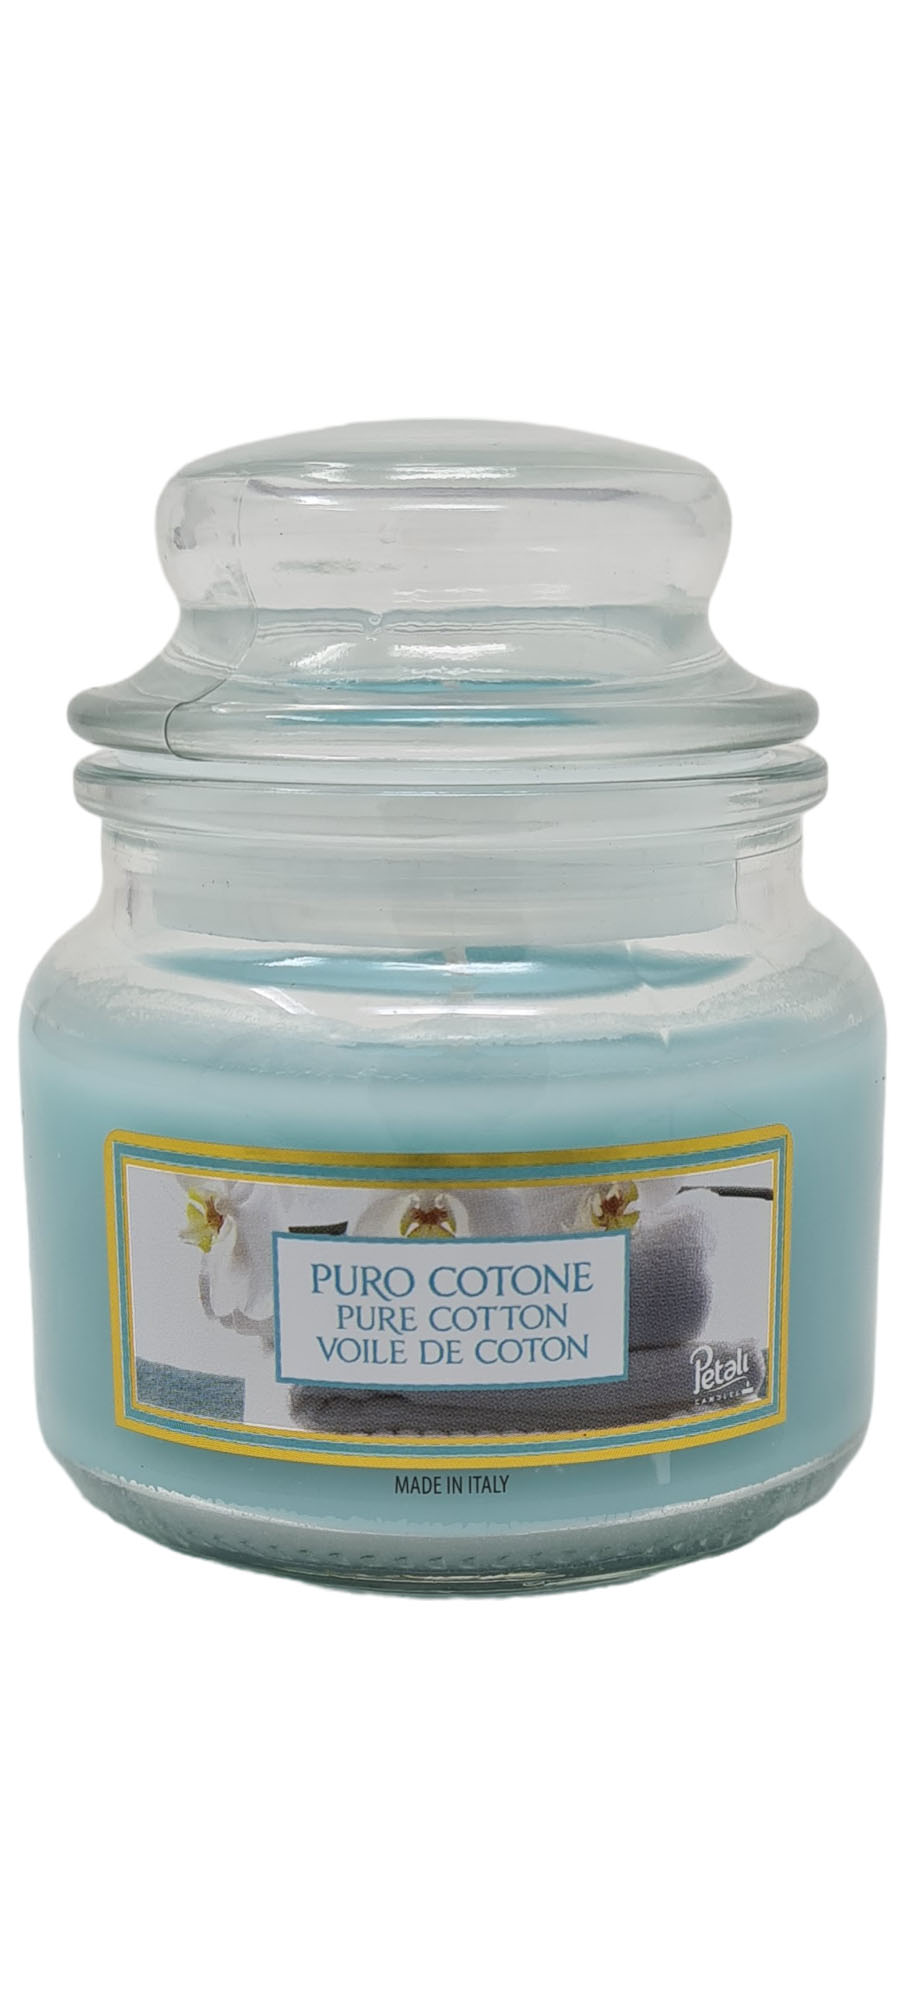 00114 - Kerzen im Glas 100g- Pure Cotton